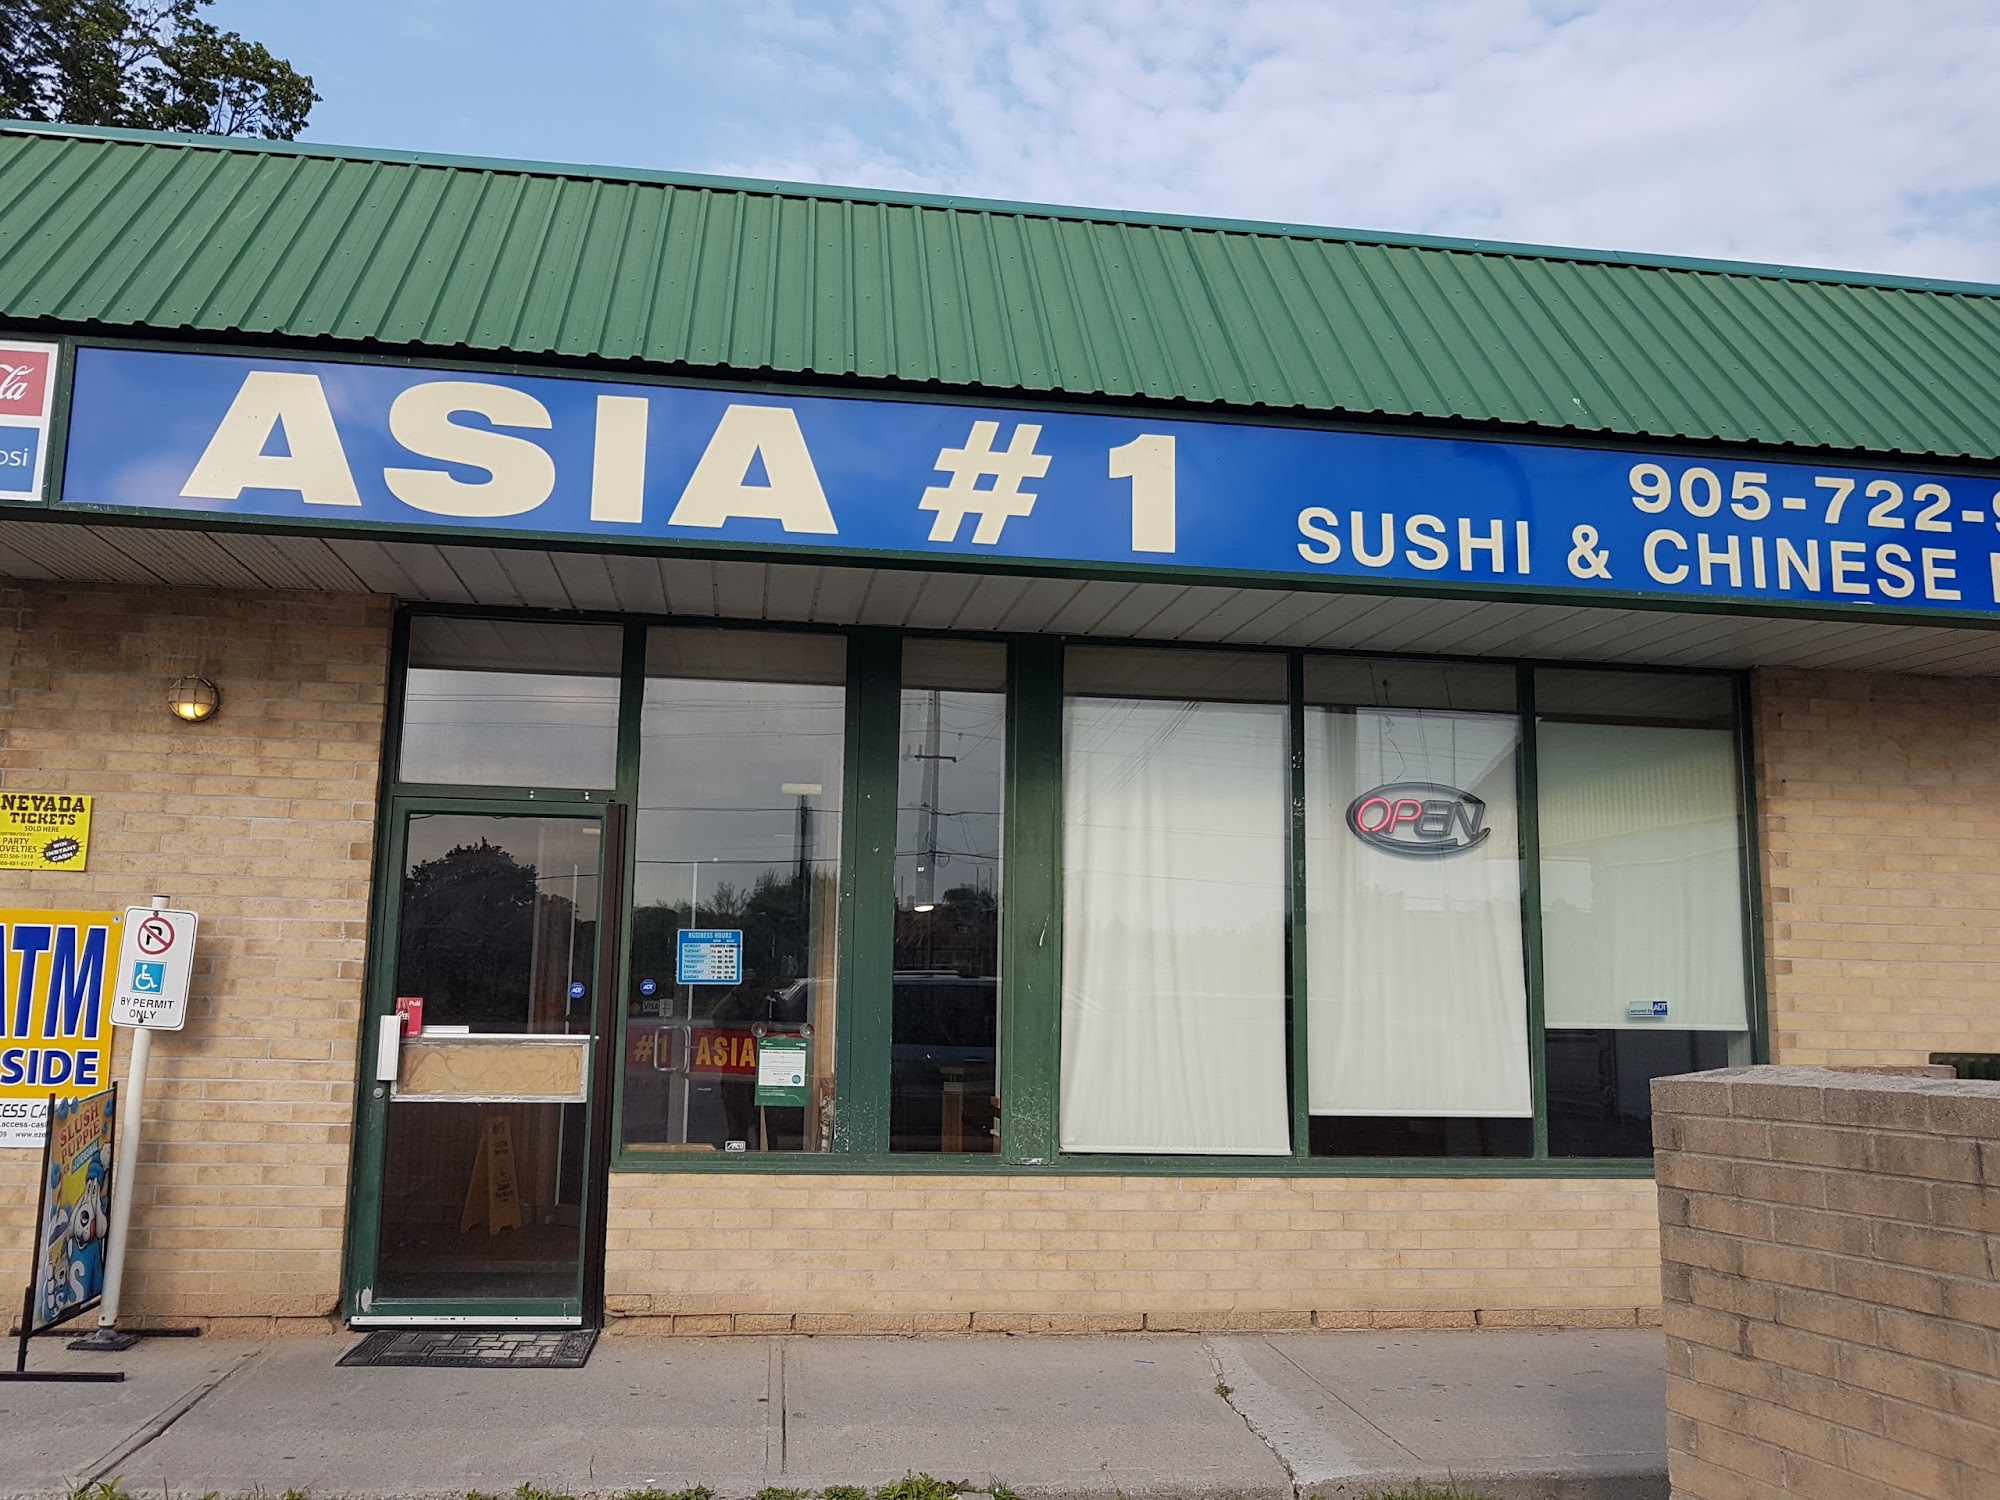 Asia# 1 Restaurant